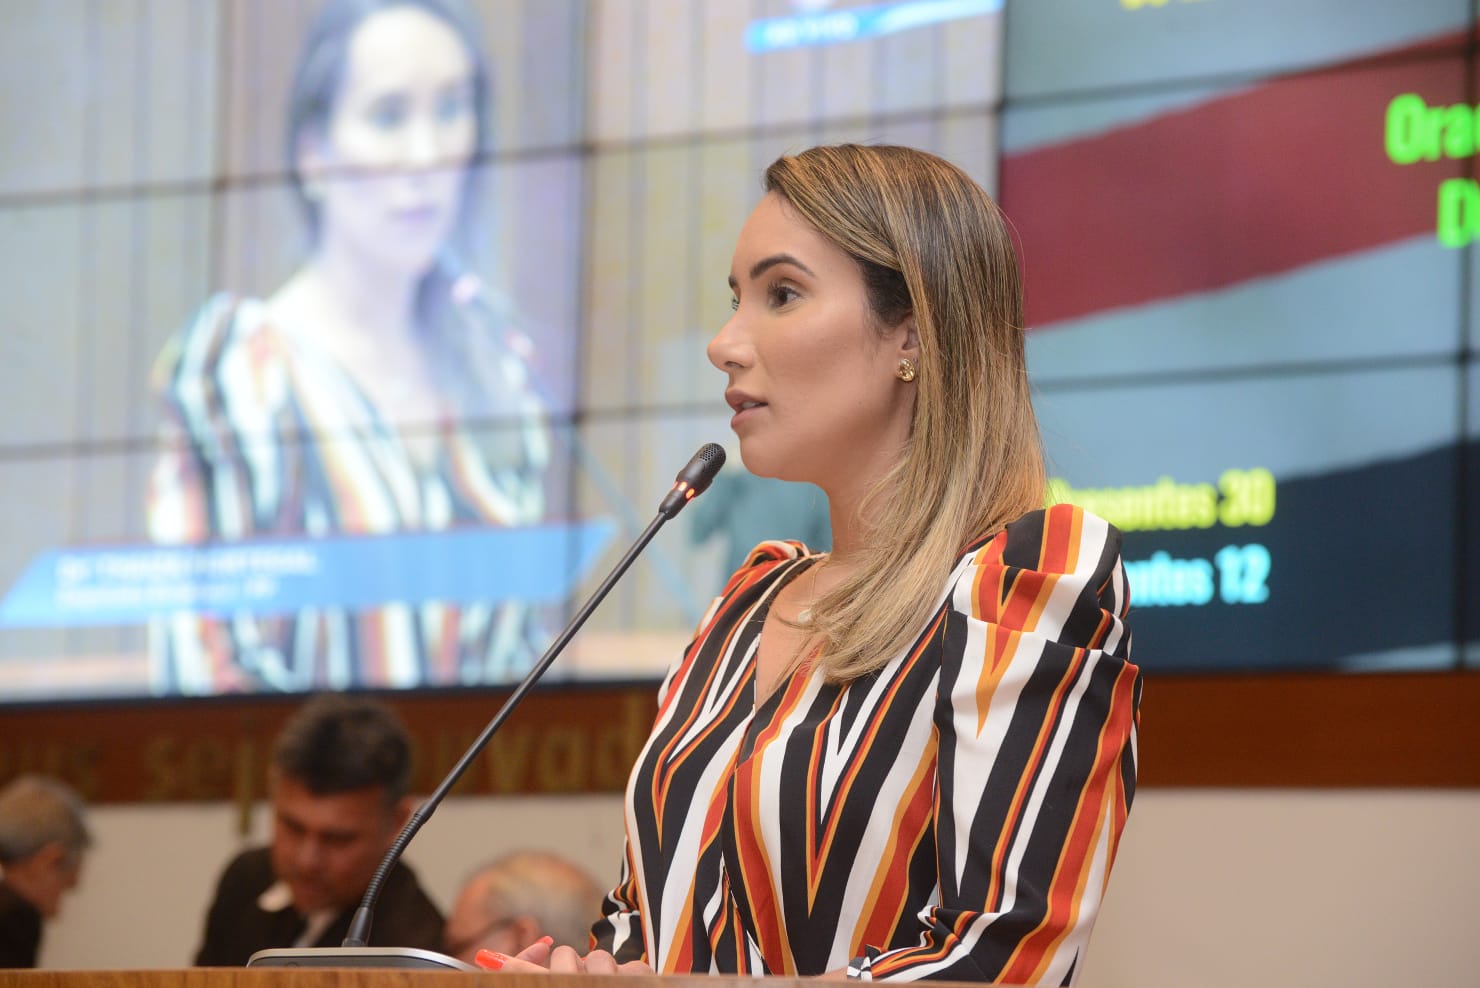 Thaiza Hortegal emociona com discurso em nome das vítimas de acidentes de trânsito